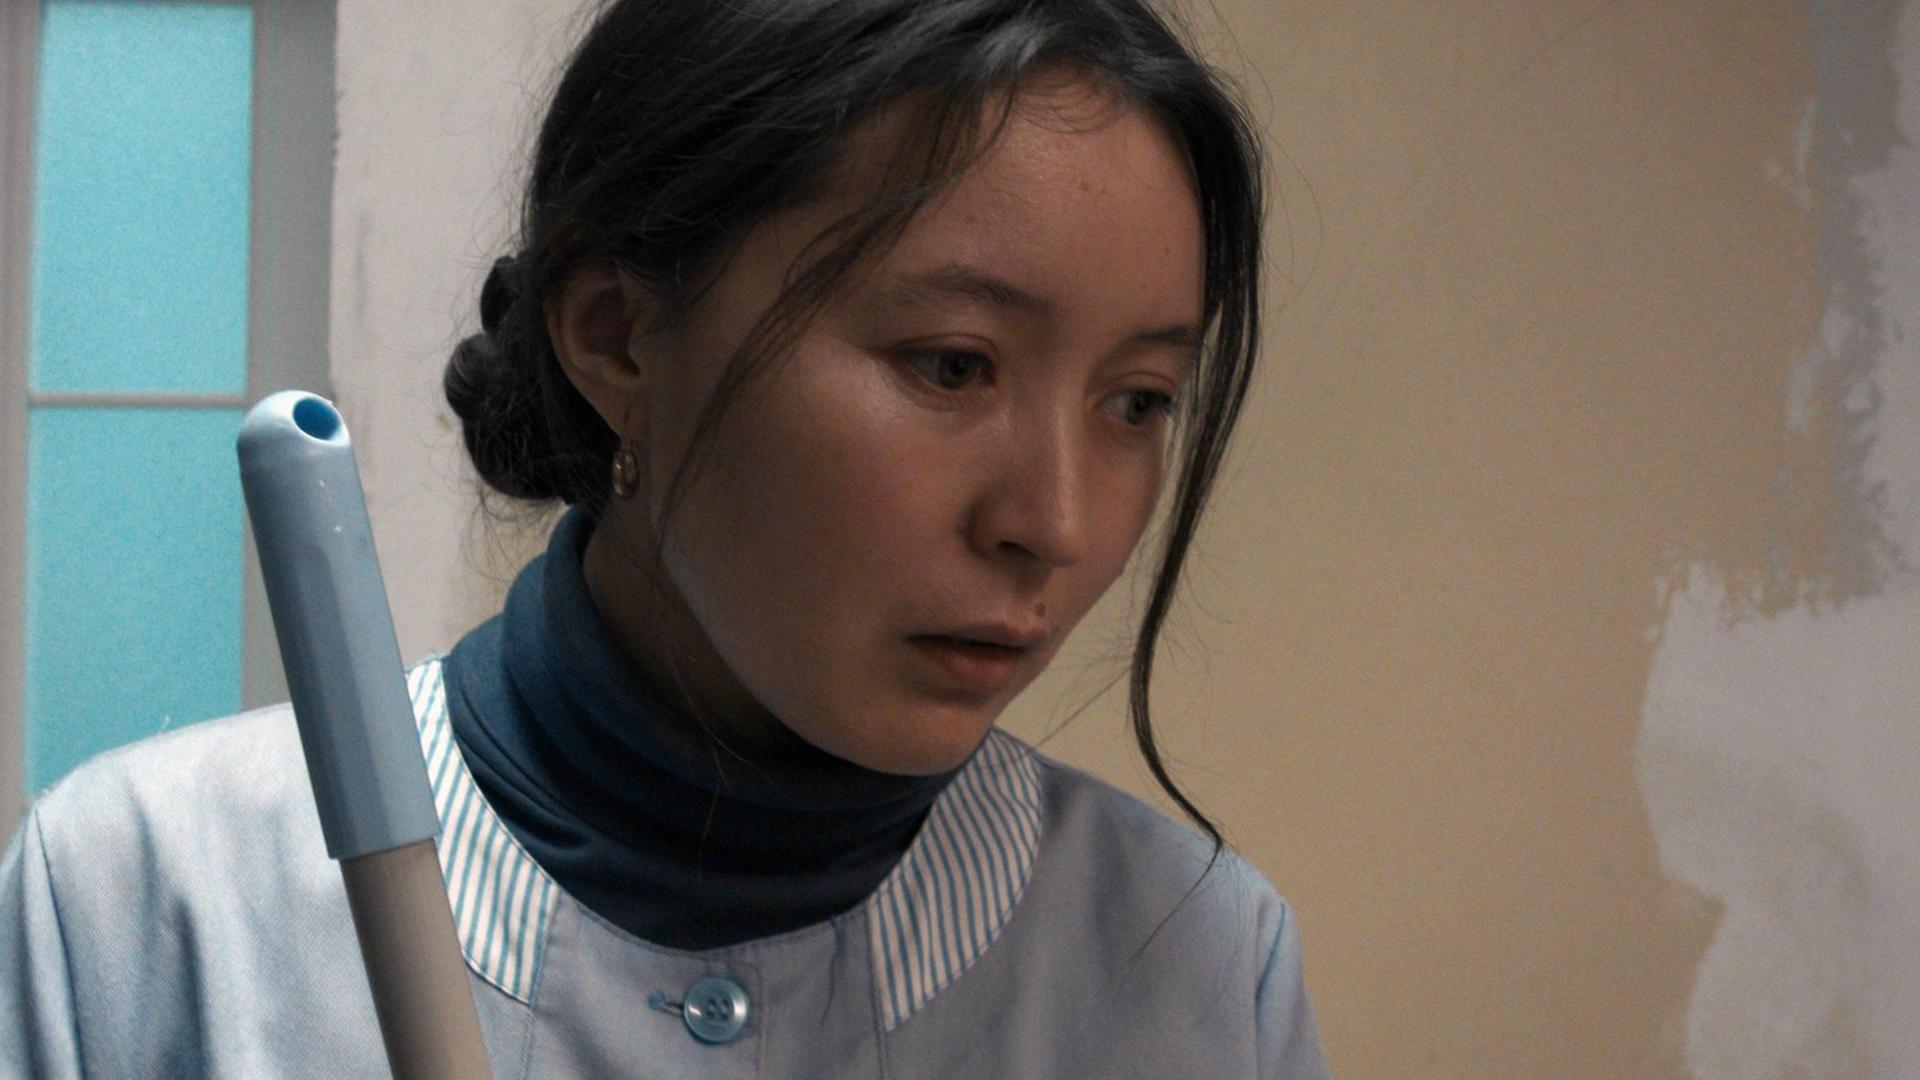 Szene aus dem Film "Ayka". Zu sehen ist die Protagonistin.